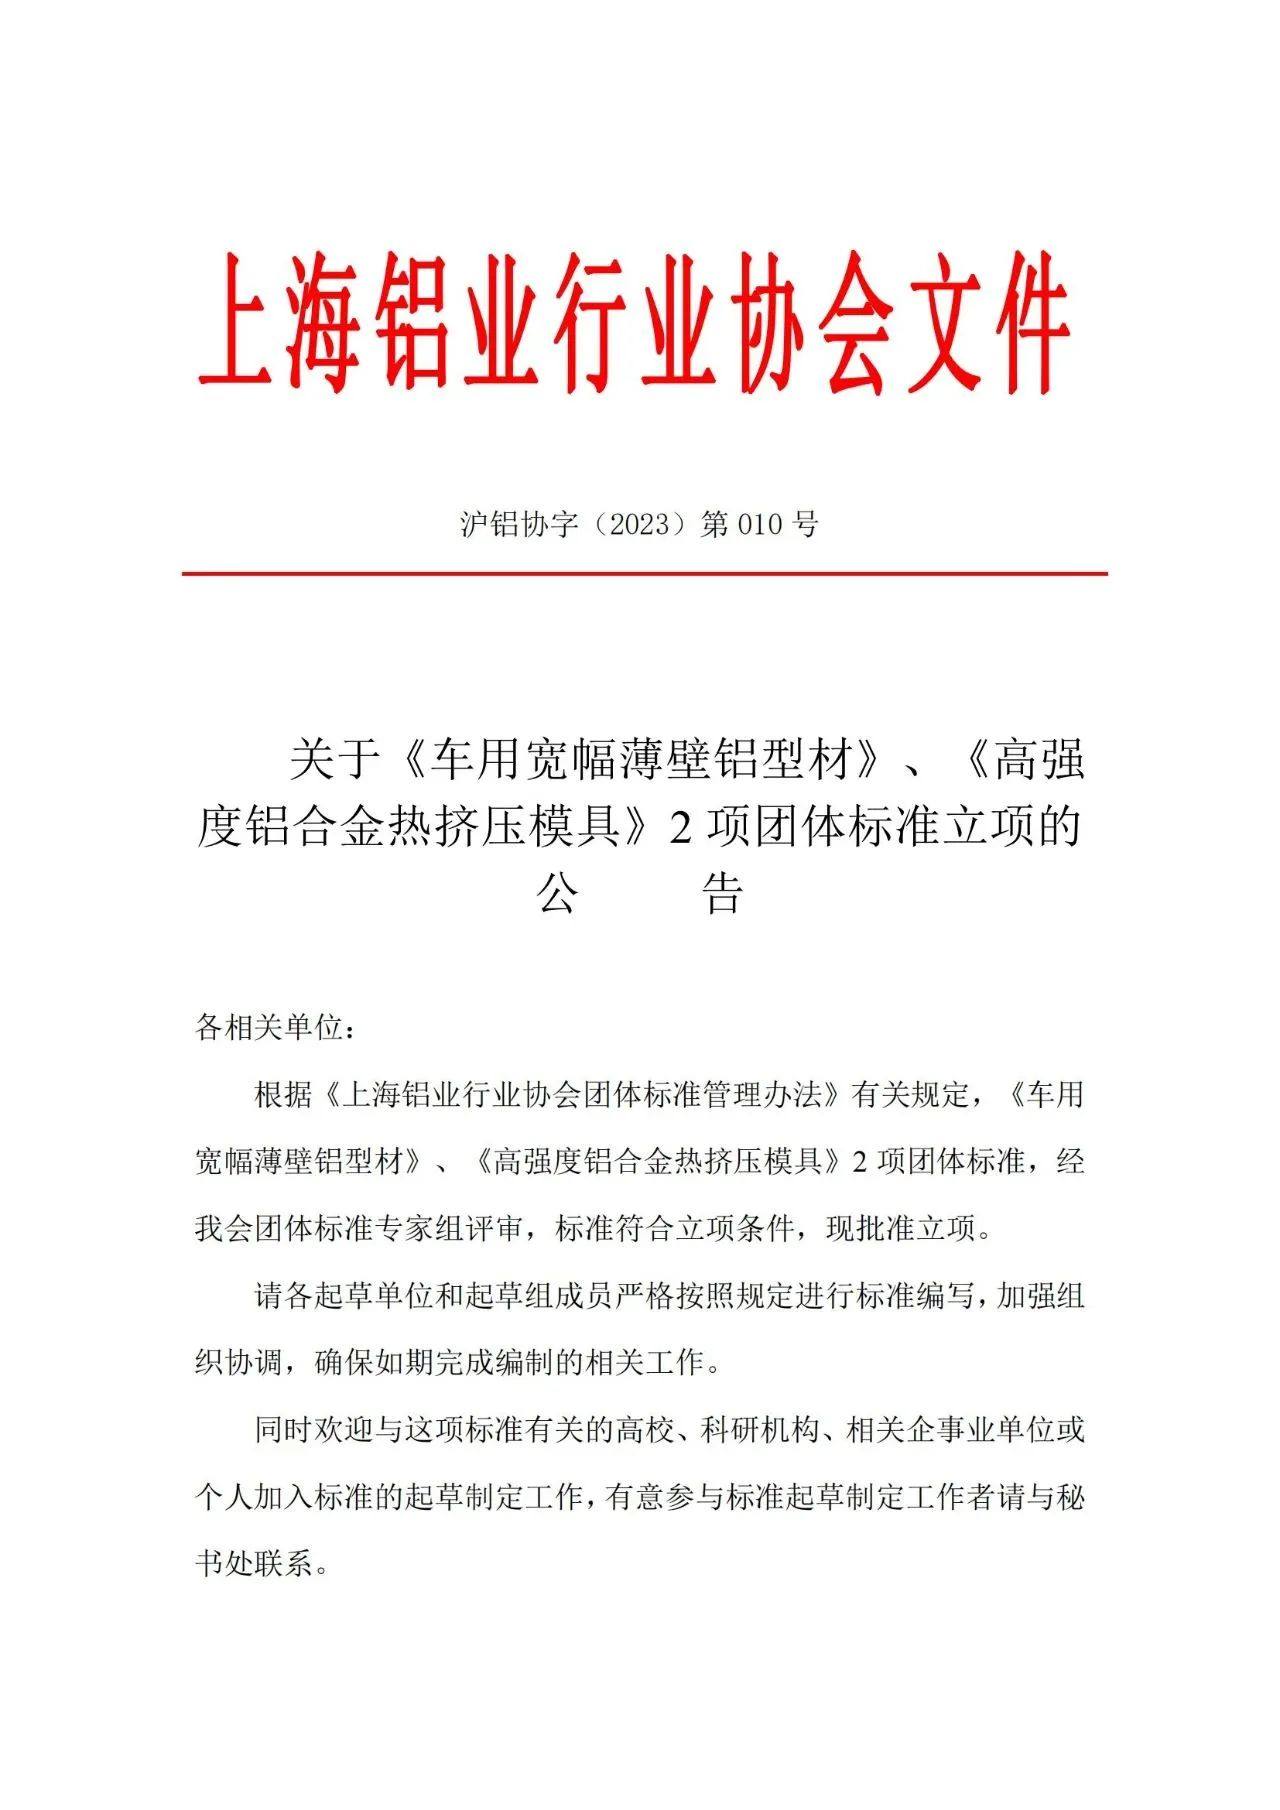 上海铝协关于《车用宽幅薄壁铝型材》、《高轻度铝合金挤压模具》2项团体标准立项的公告